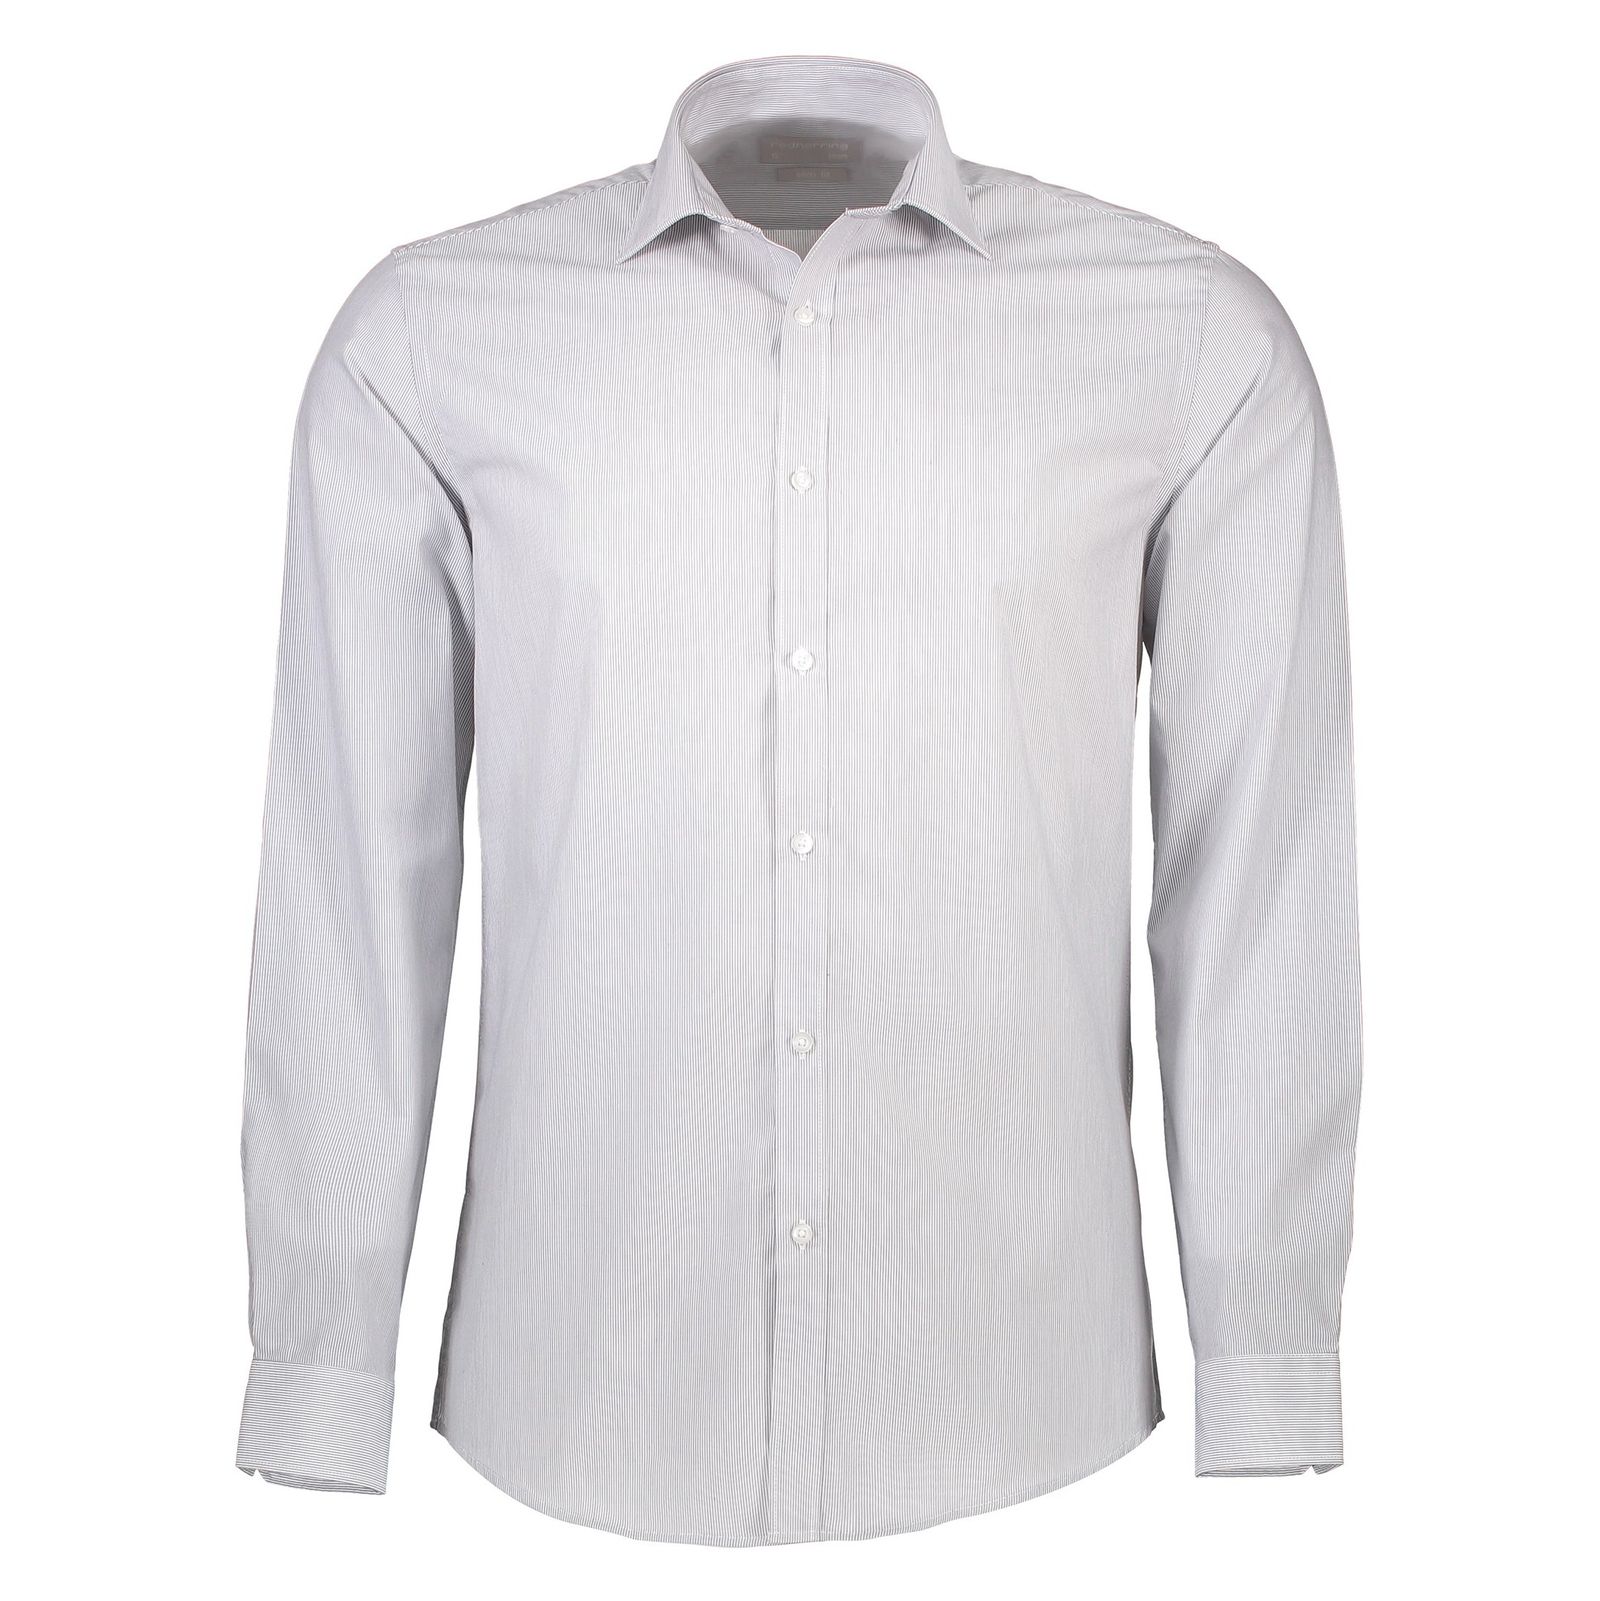 پیراهن رسمی مردانه - رد هرینگ - طوسي - 1